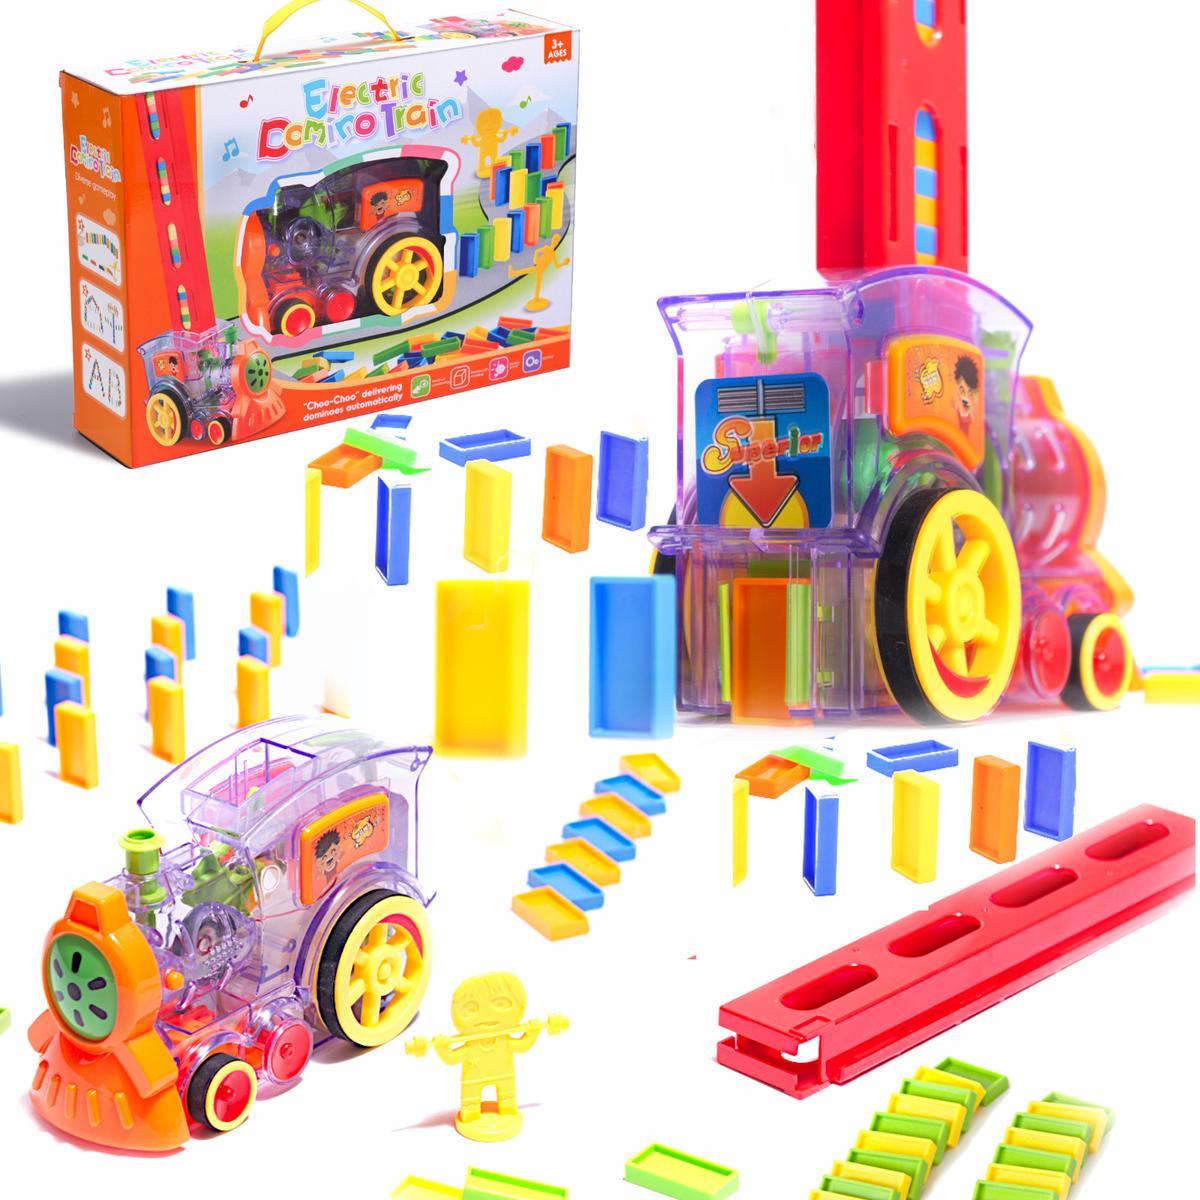 Pociąg Lokomotywa interaktywna układanka domino z kolejką zabawka dla dzieci 16x7x10 cm nr. 1